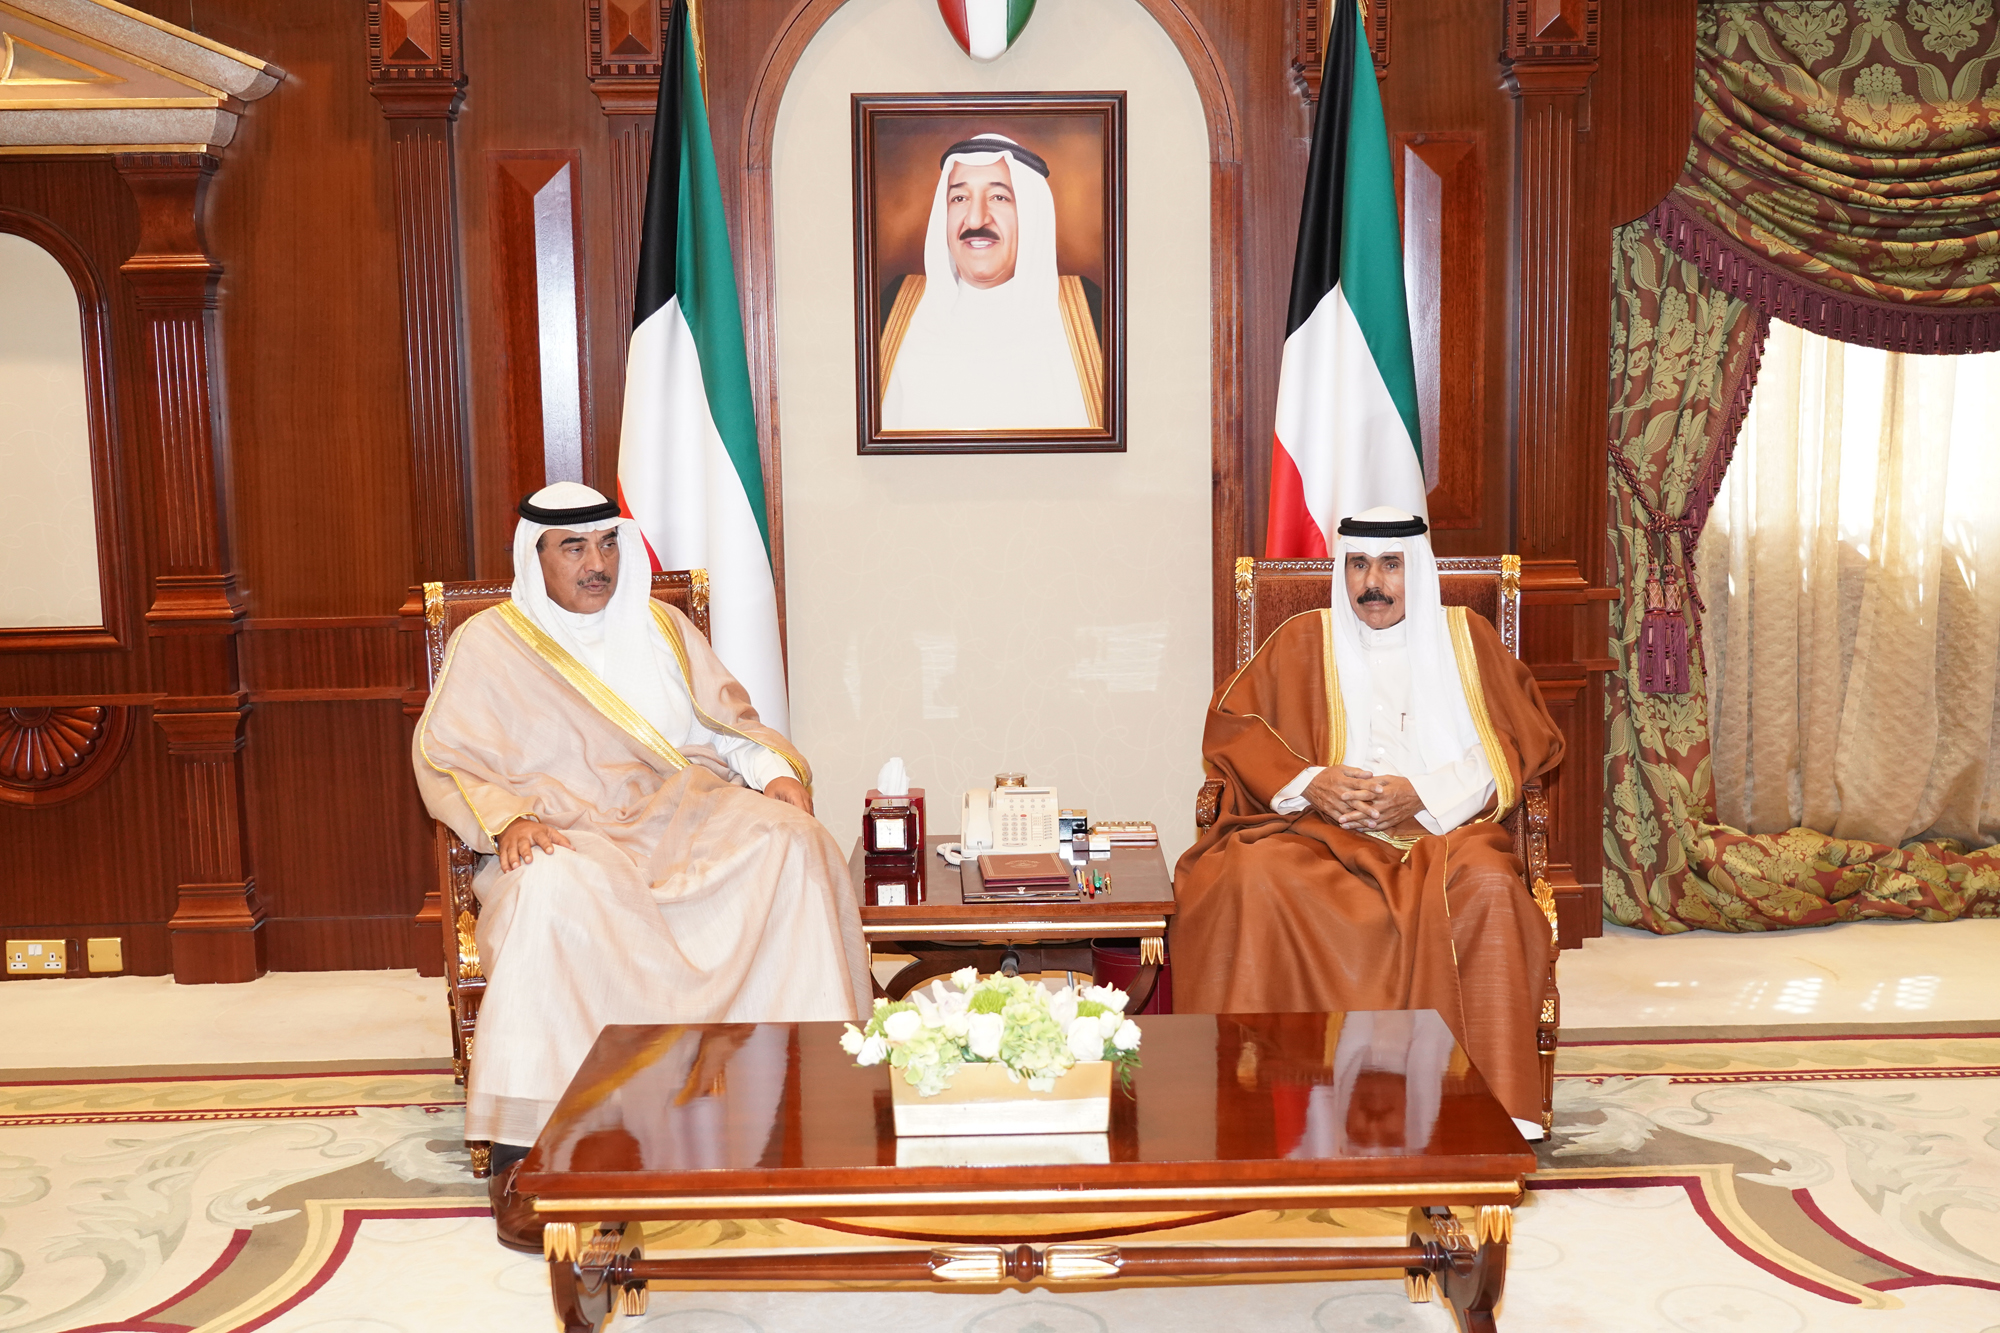 His Highness the Crown Prince Sheikh Nawaf Al-Ahmad Al-Jaber Al-Sabah received Deputy Prime Minister and Minister of Foreign Affairs Sheikh Sabah Khaled Al-Hamad Al-Sabah